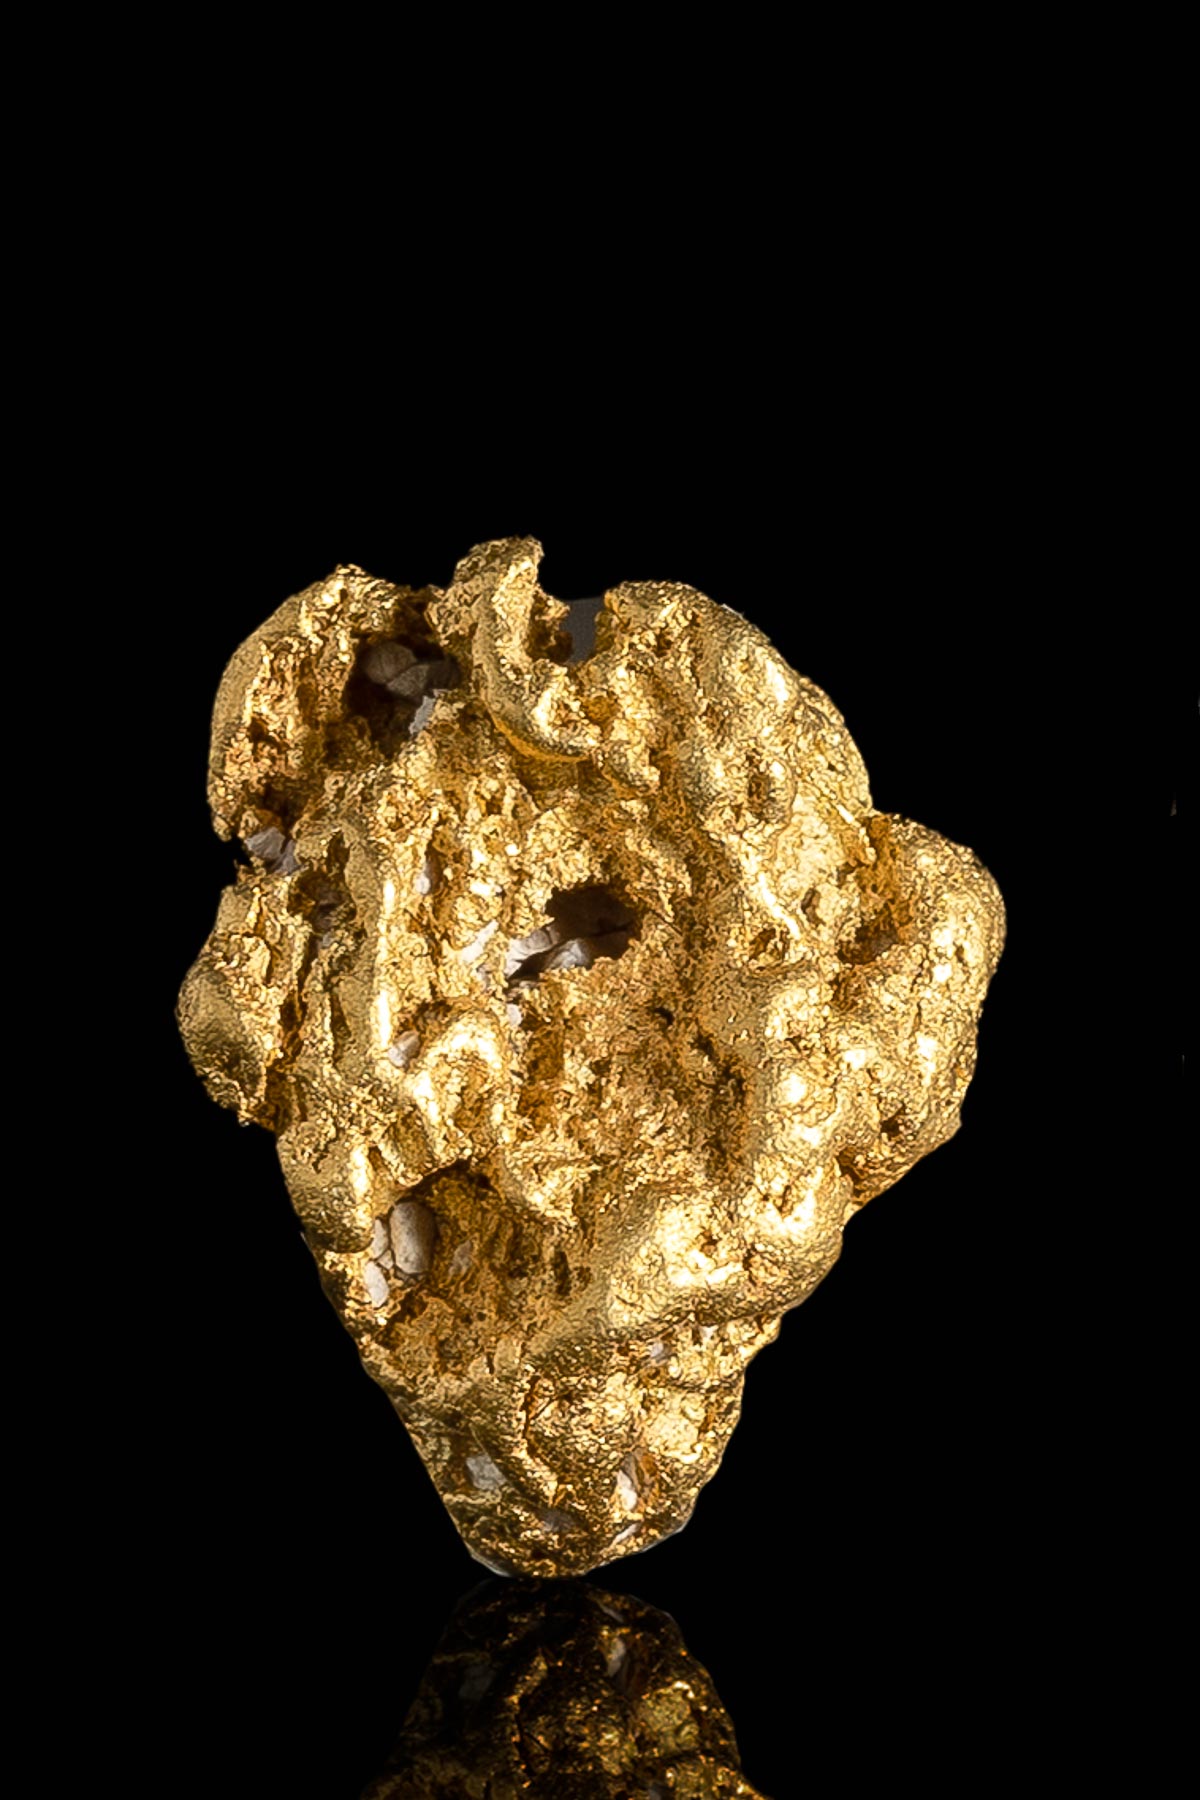 Unique Rare Textured Natural Gold and Quartz Nugget - Alaska